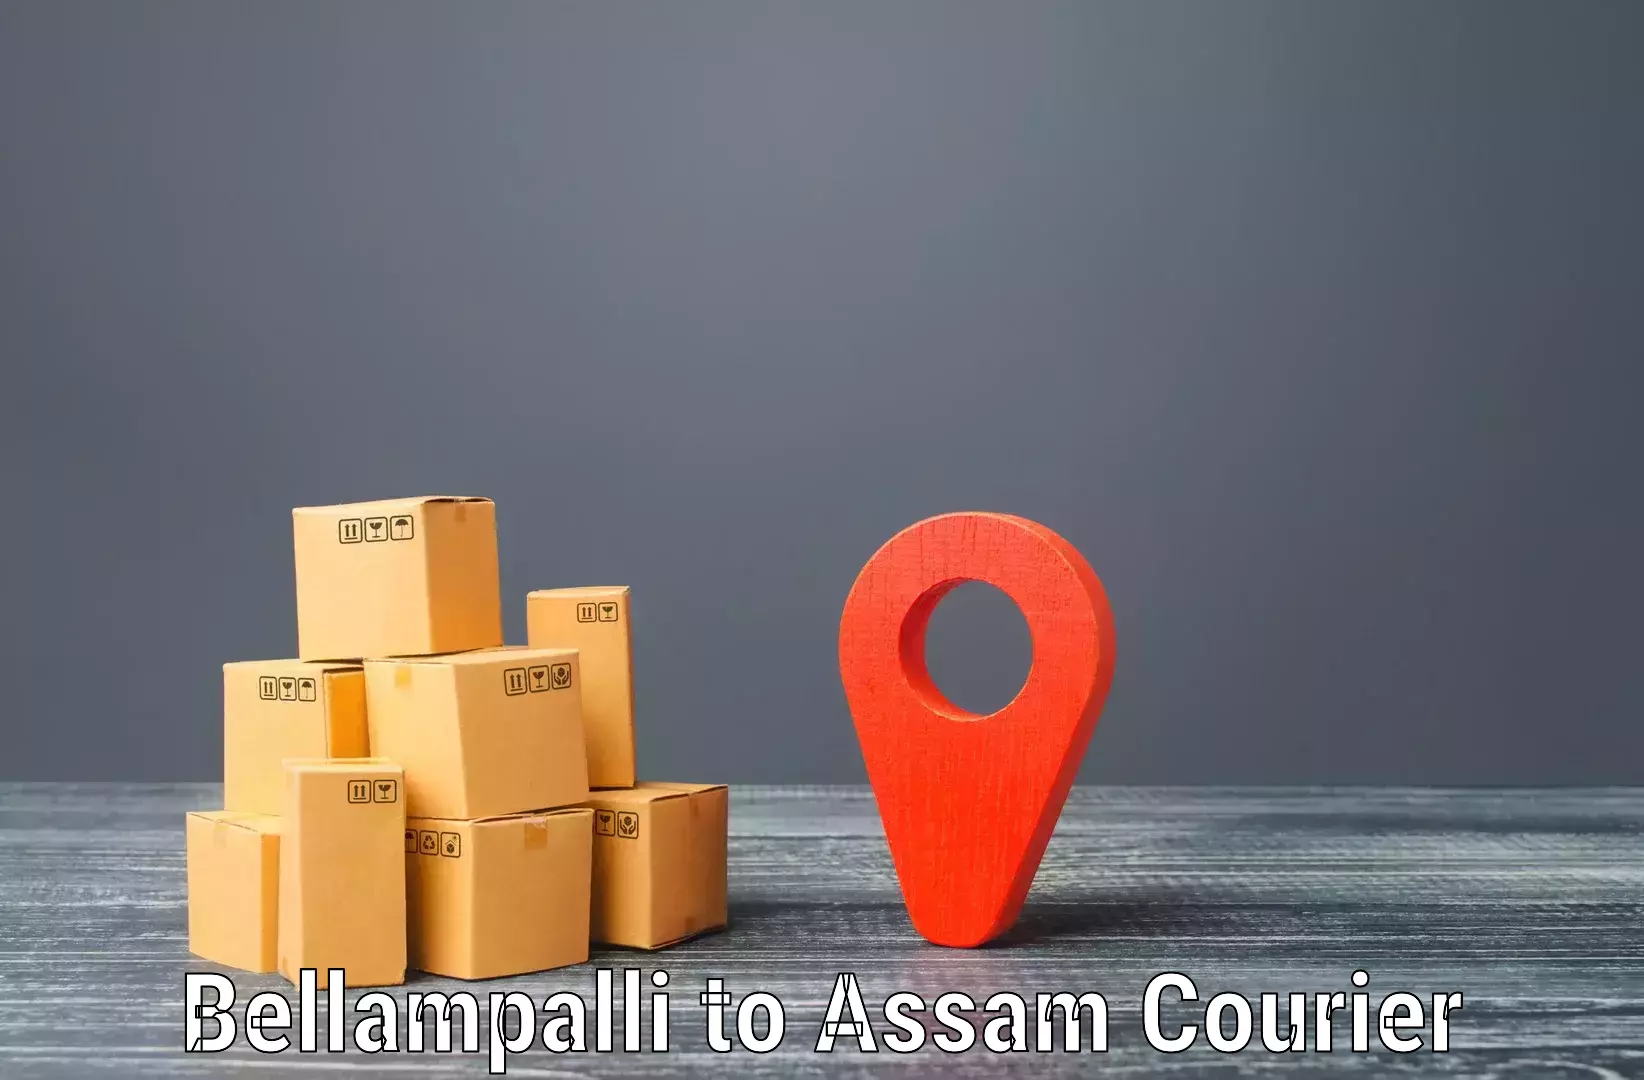 Flexible parcel services Bellampalli to Assam